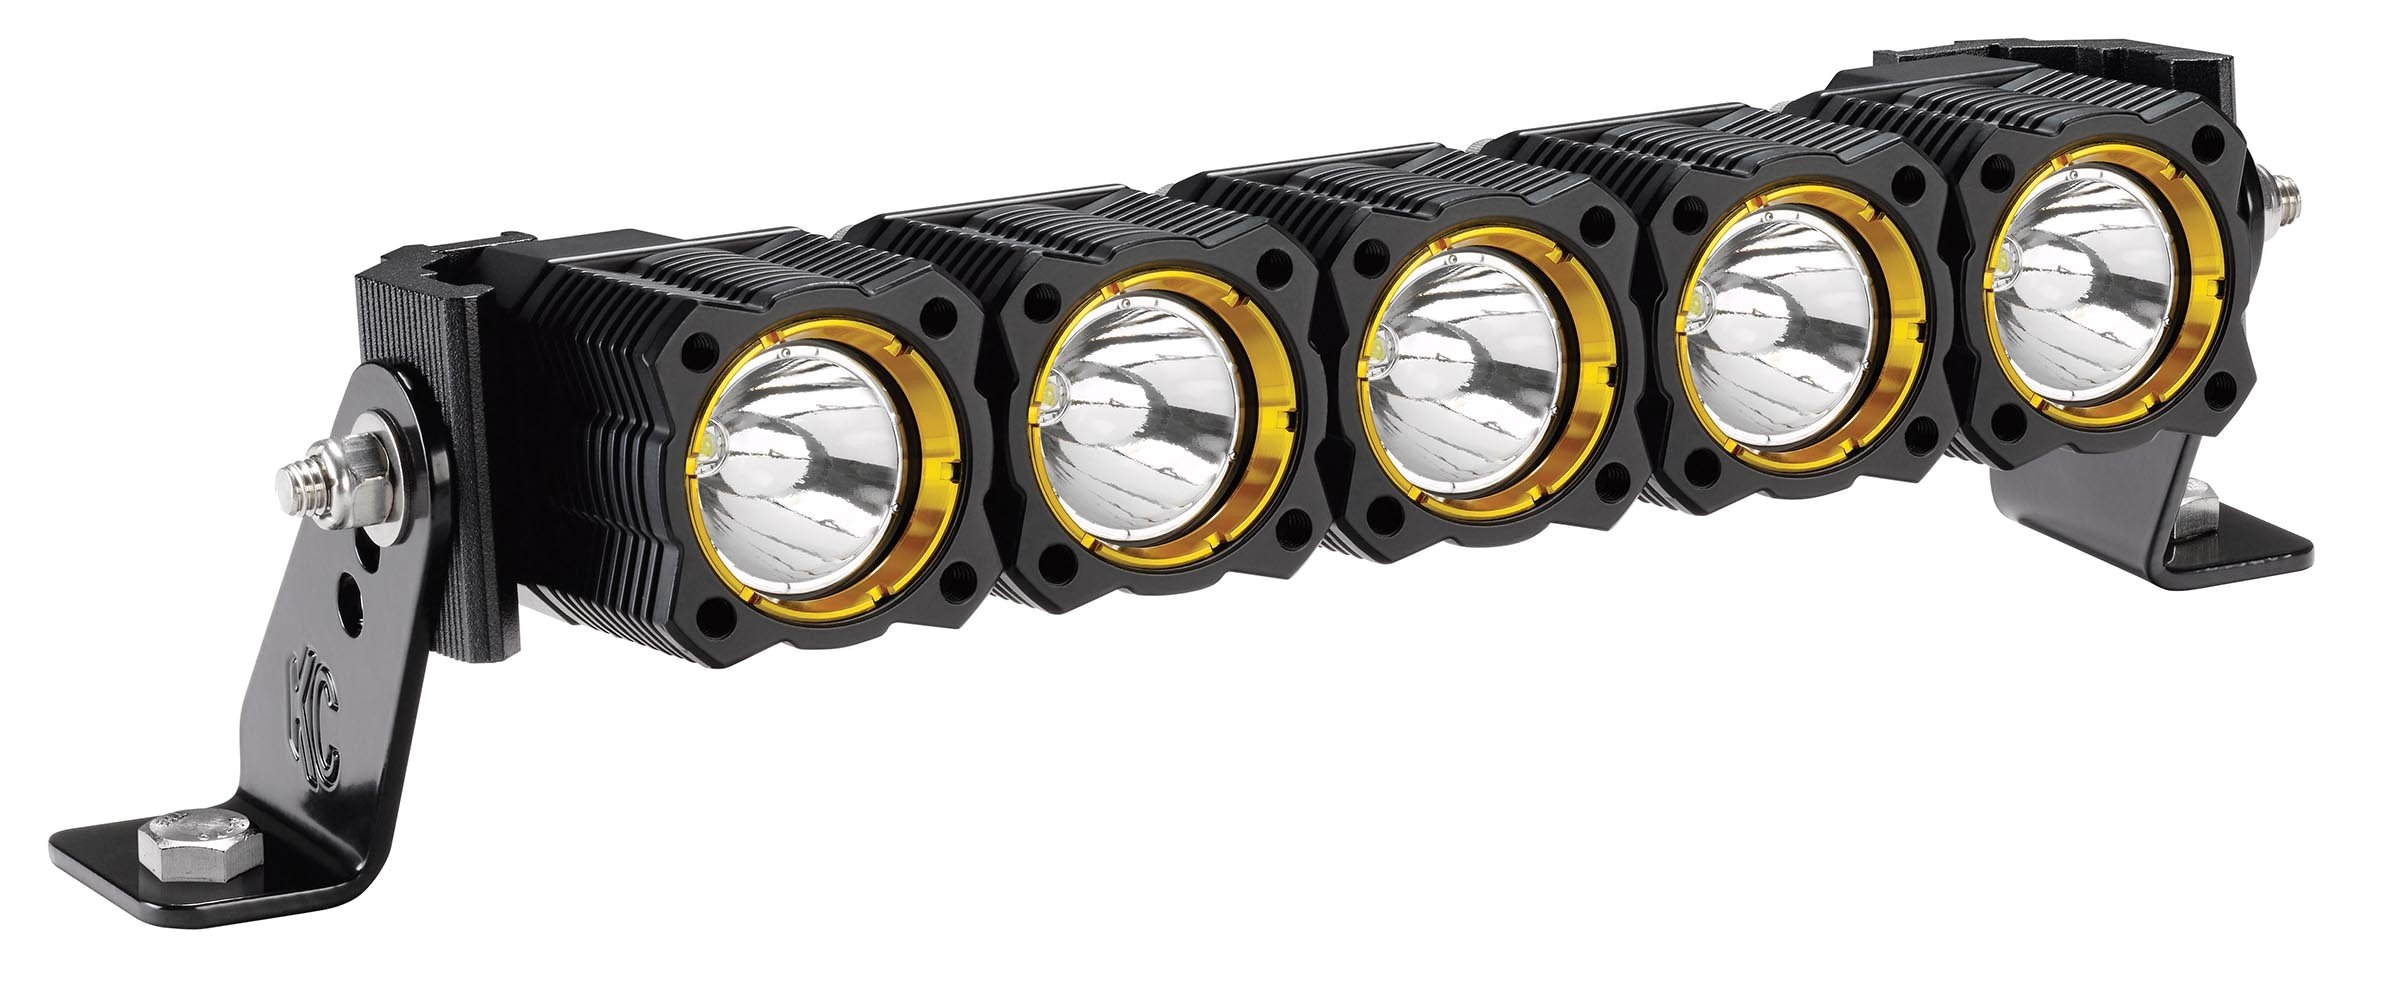 kc flexa¢ array led light bars expandable sizes 10 to 50